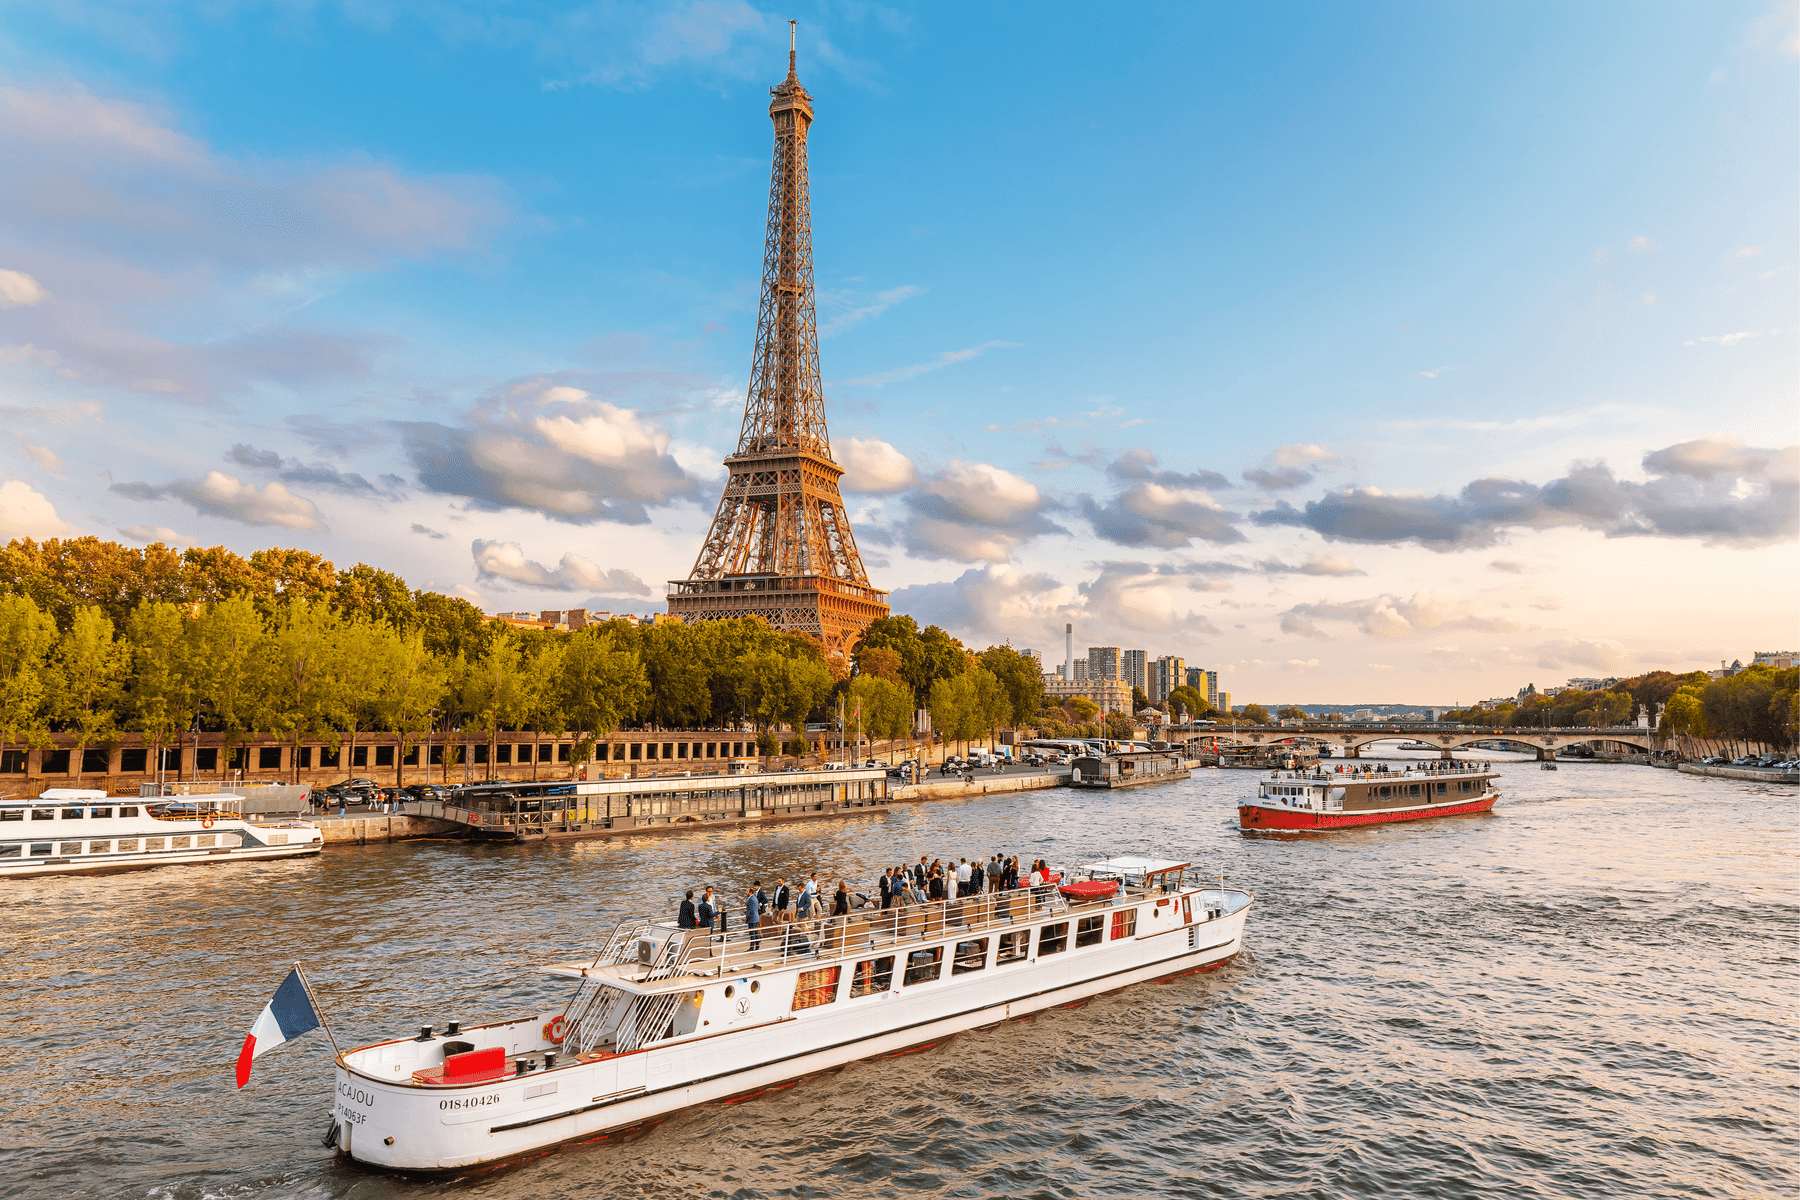 Eiffel Tower Dinner Tickets & Sightseeing Seine River Cruise